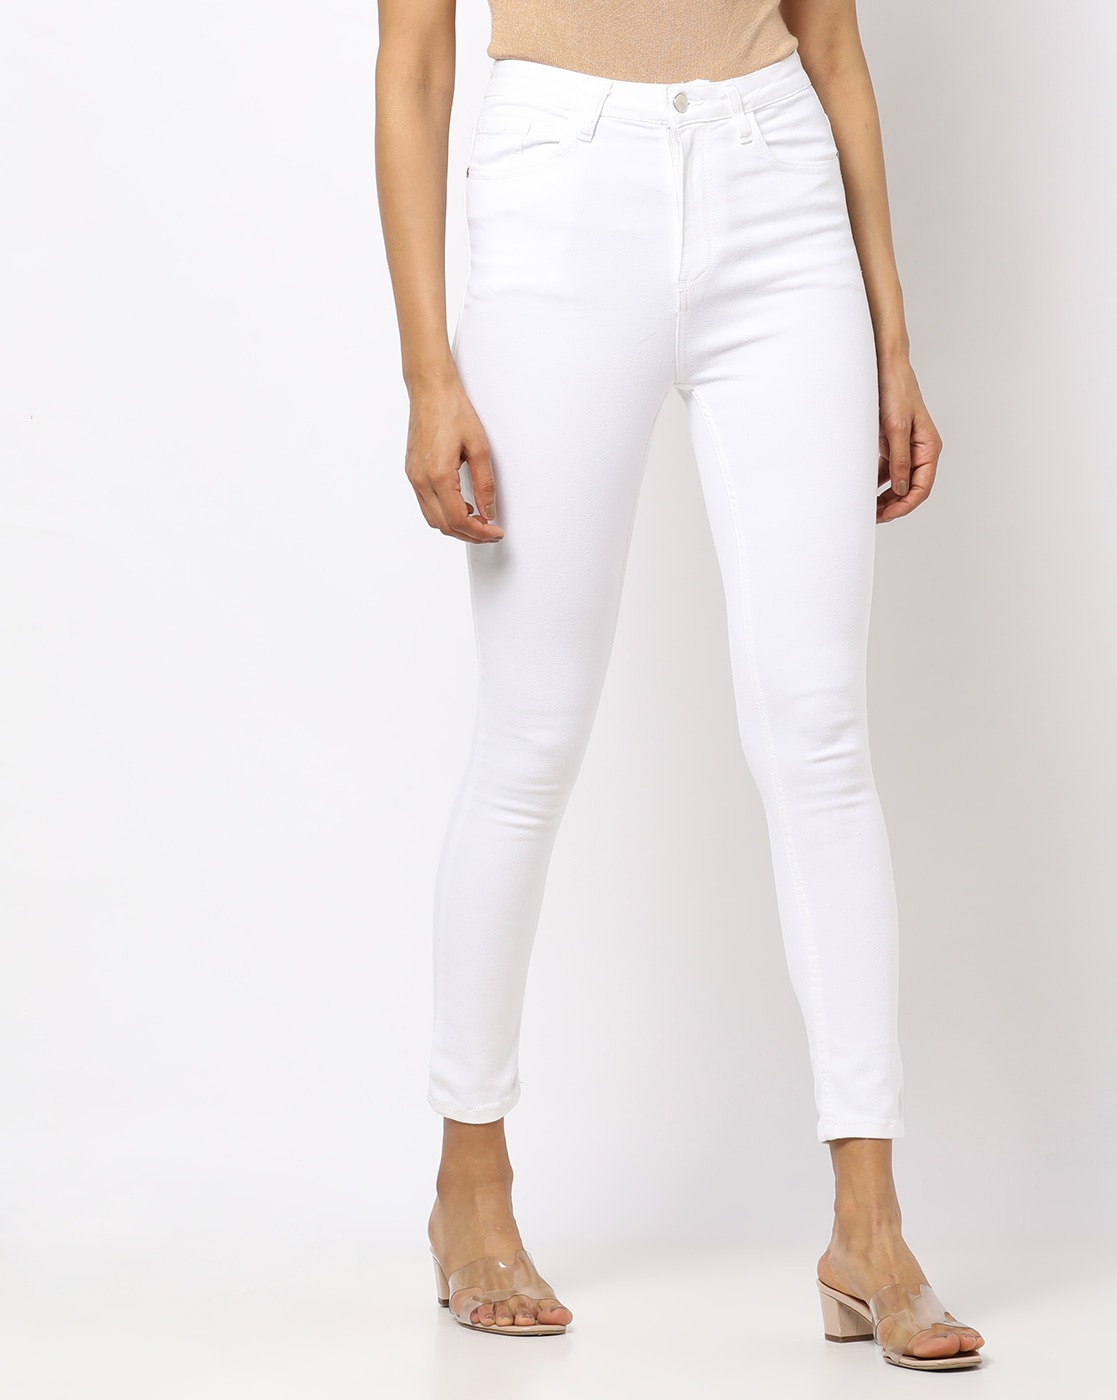 MM-21 Skinny Women White Jeans - Buy MM-21 Skinny Women White Jeans Online  at Best Prices in India | Flipkart.com